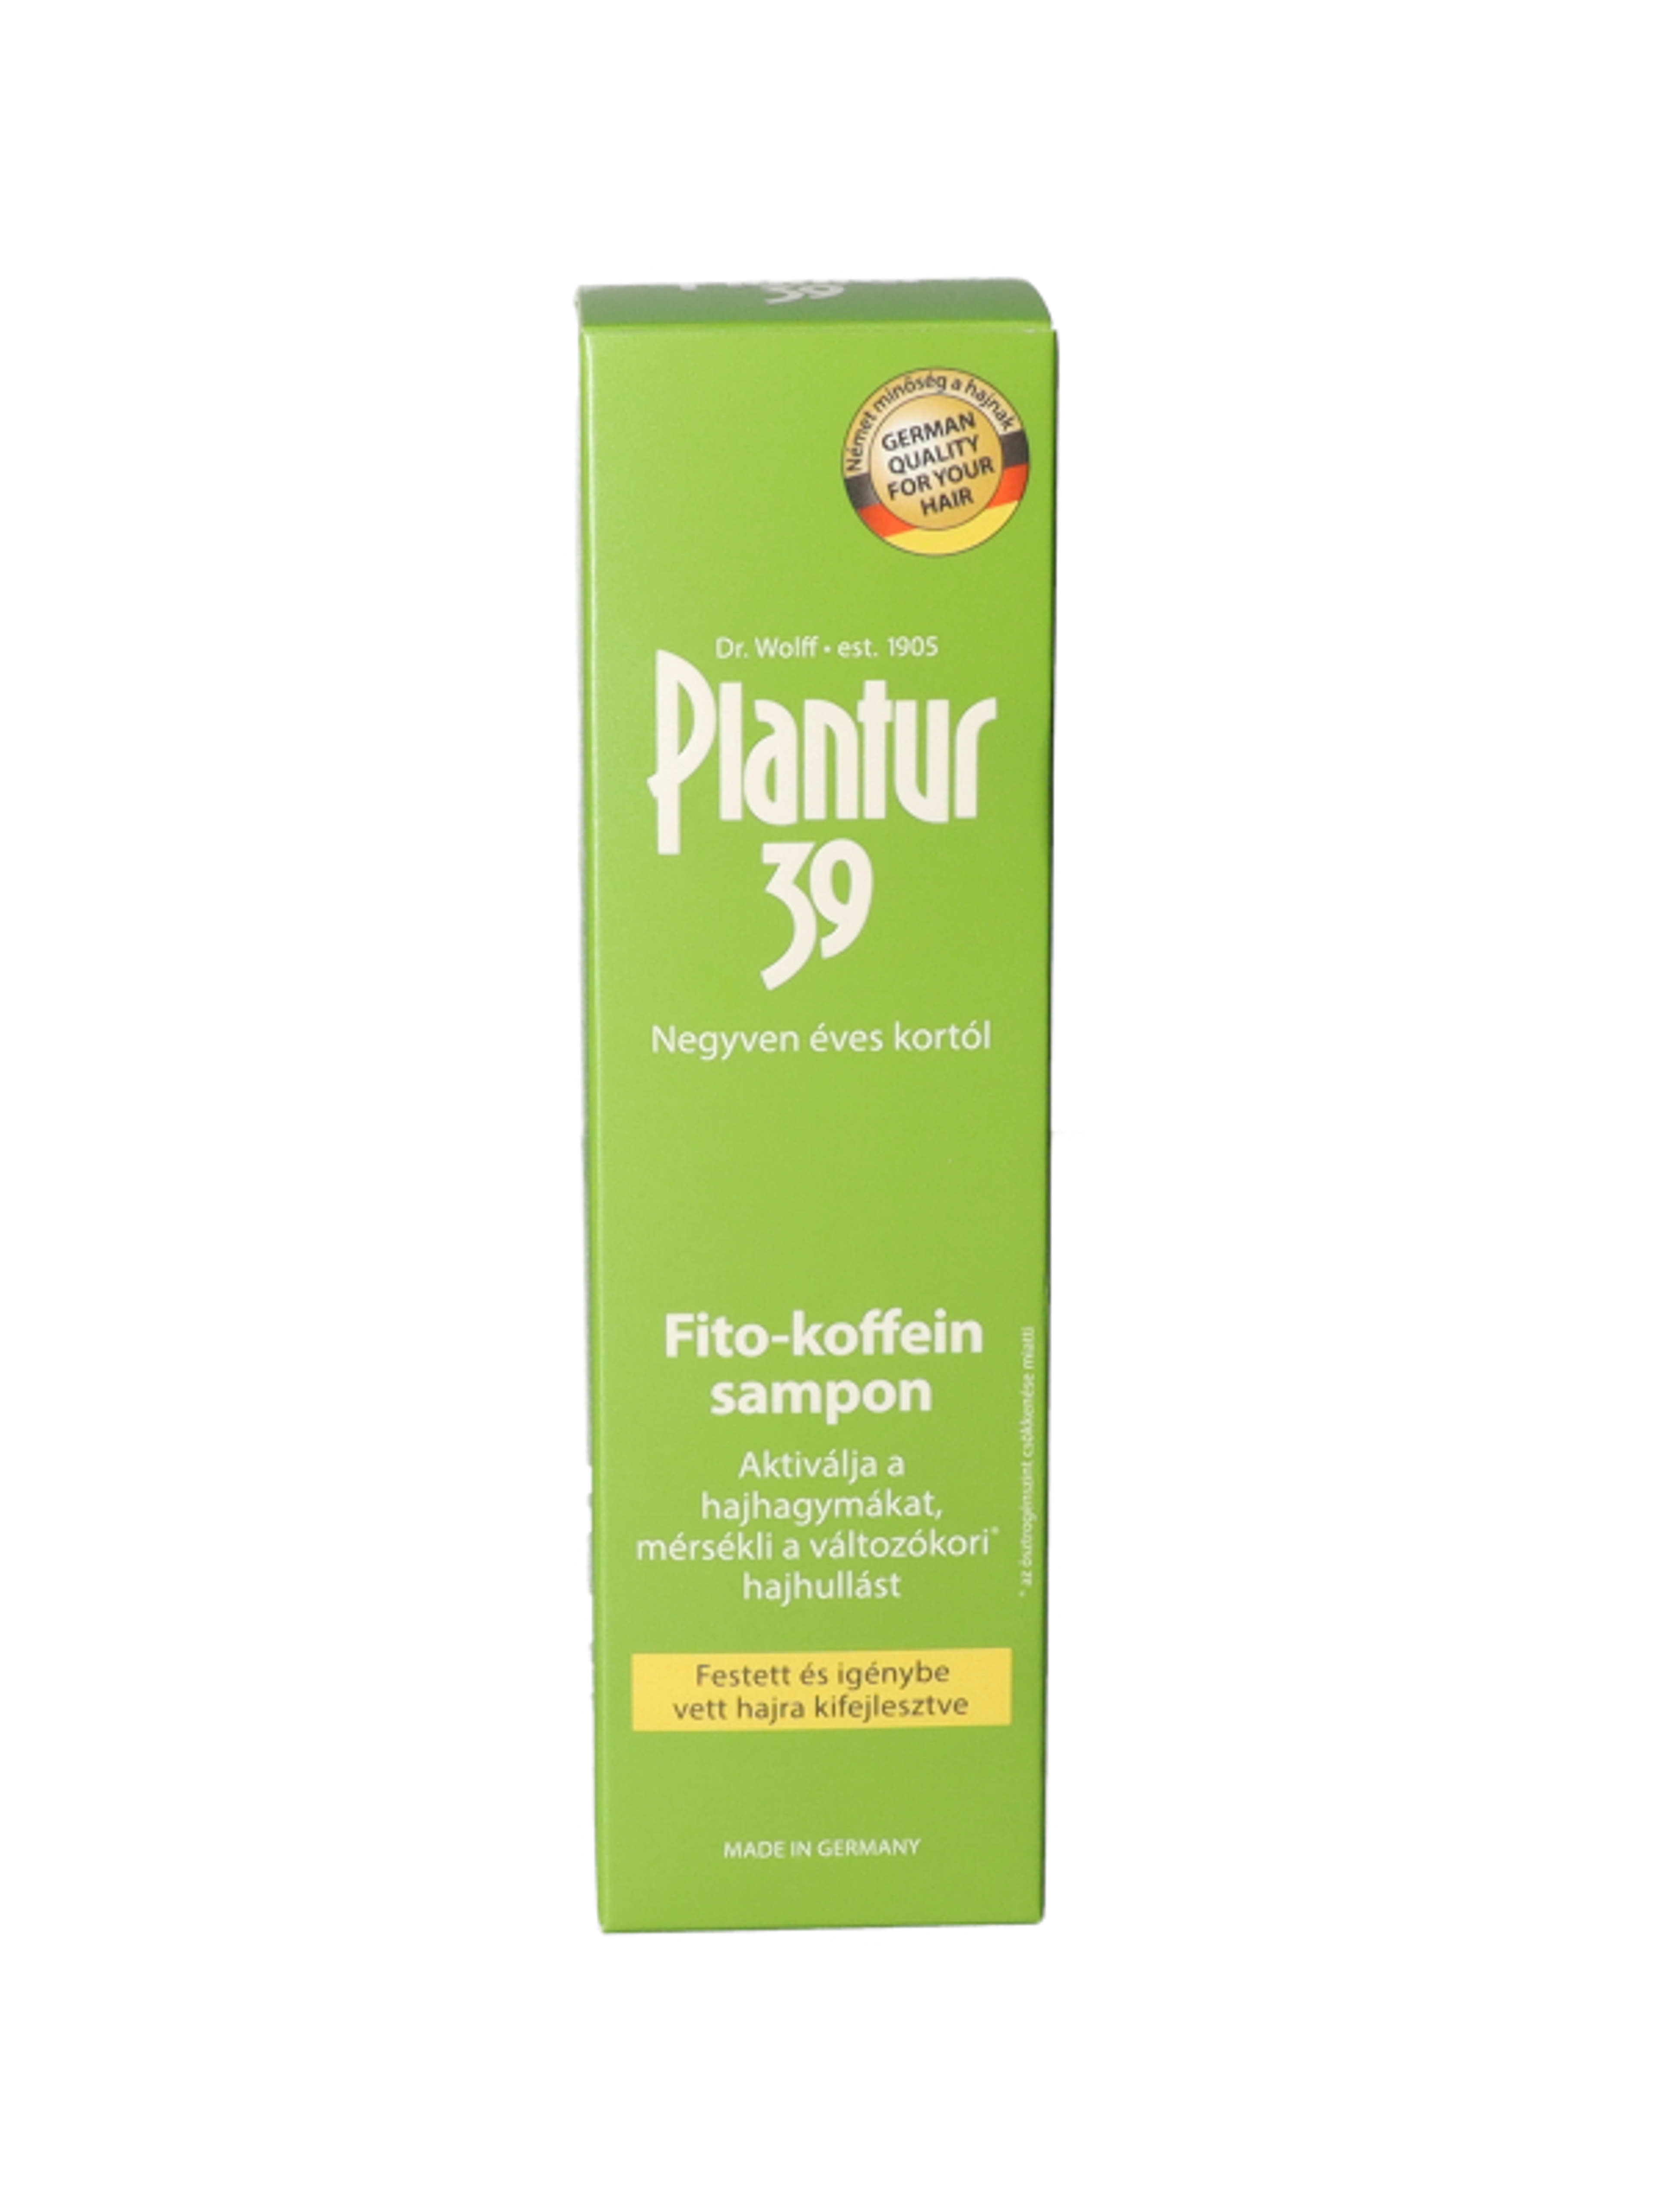 Plantur 39 Fito-Koffein Festett Hajra sampon - 250 ml